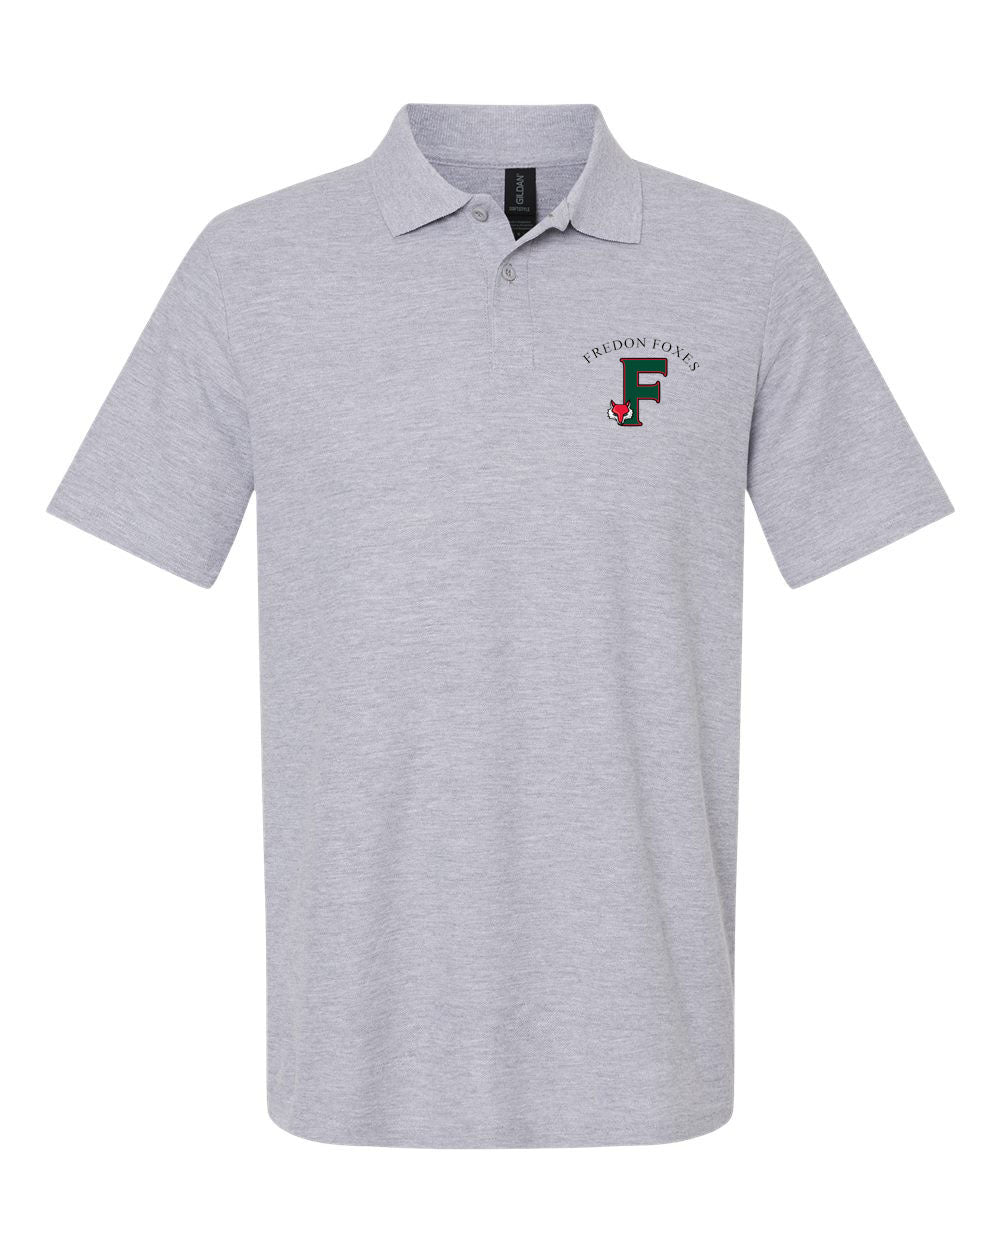 Fredon design 9 Polo T-Shirt